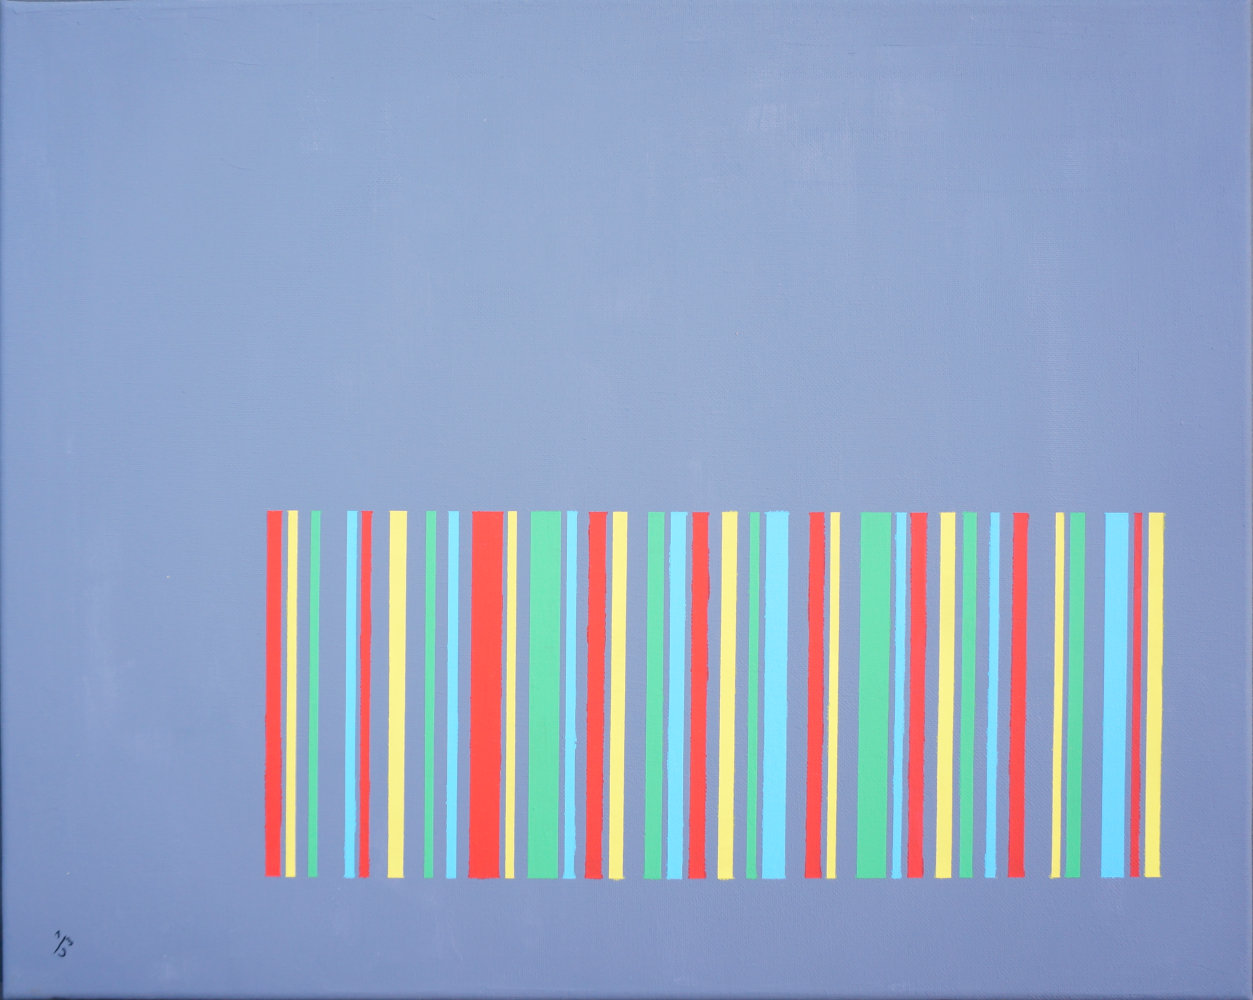 Abstrakte Acrylmalerei, Entwurf im 3D-Konstruktionsprogramm, Ausführung in Schablonentechnik, 2012. Vor einem blauen Hintergrund befinden sich eine barcode-ähnliche Anordnung aus Streifen in den Farben rot, grün und gelb. Scannen des Barcodes ergäbe den Titel des Werks.